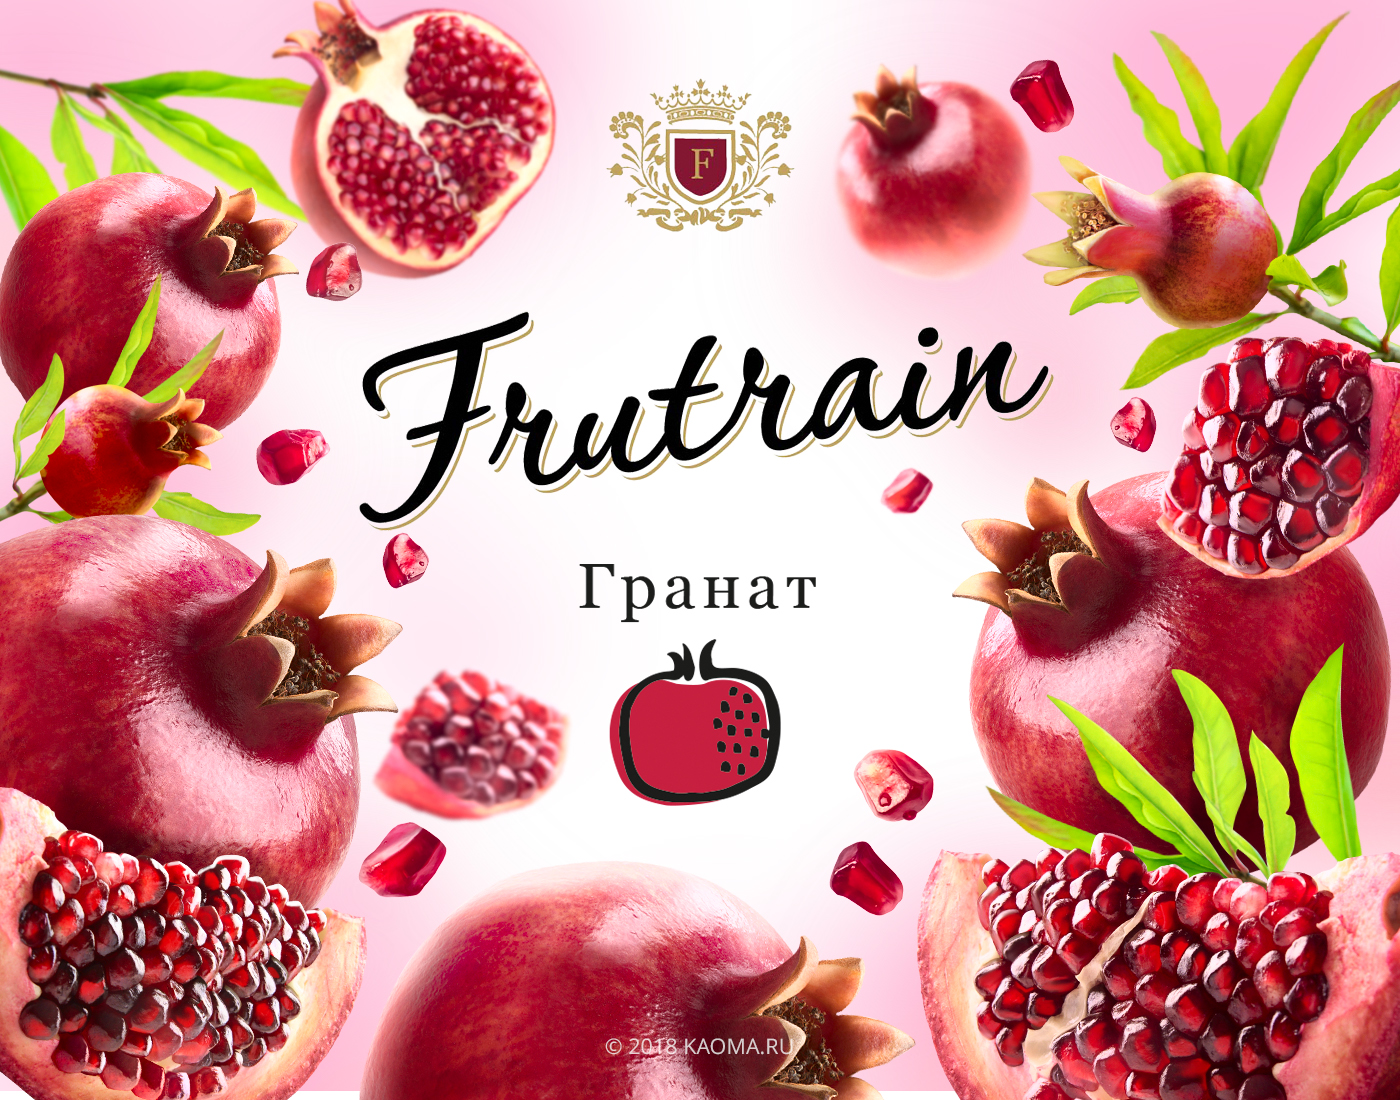 Frutrain